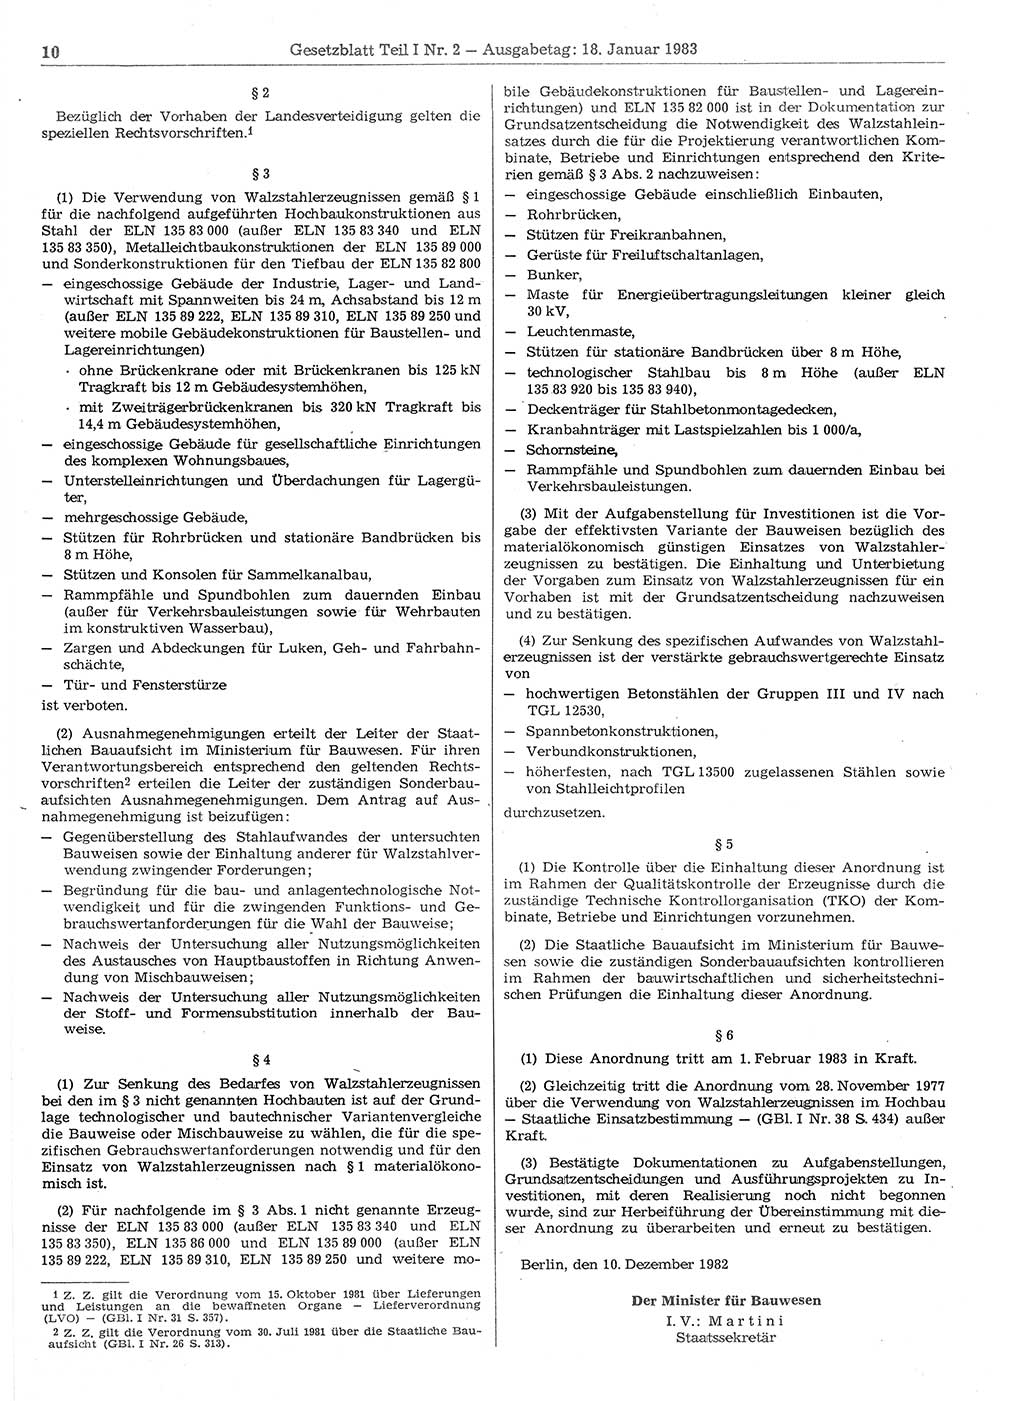 Gesetzblatt (GBl.) der Deutschen Demokratischen Republik (DDR) Teil Ⅰ 1983, Seite 10 (GBl. DDR Ⅰ 1983, S. 10)